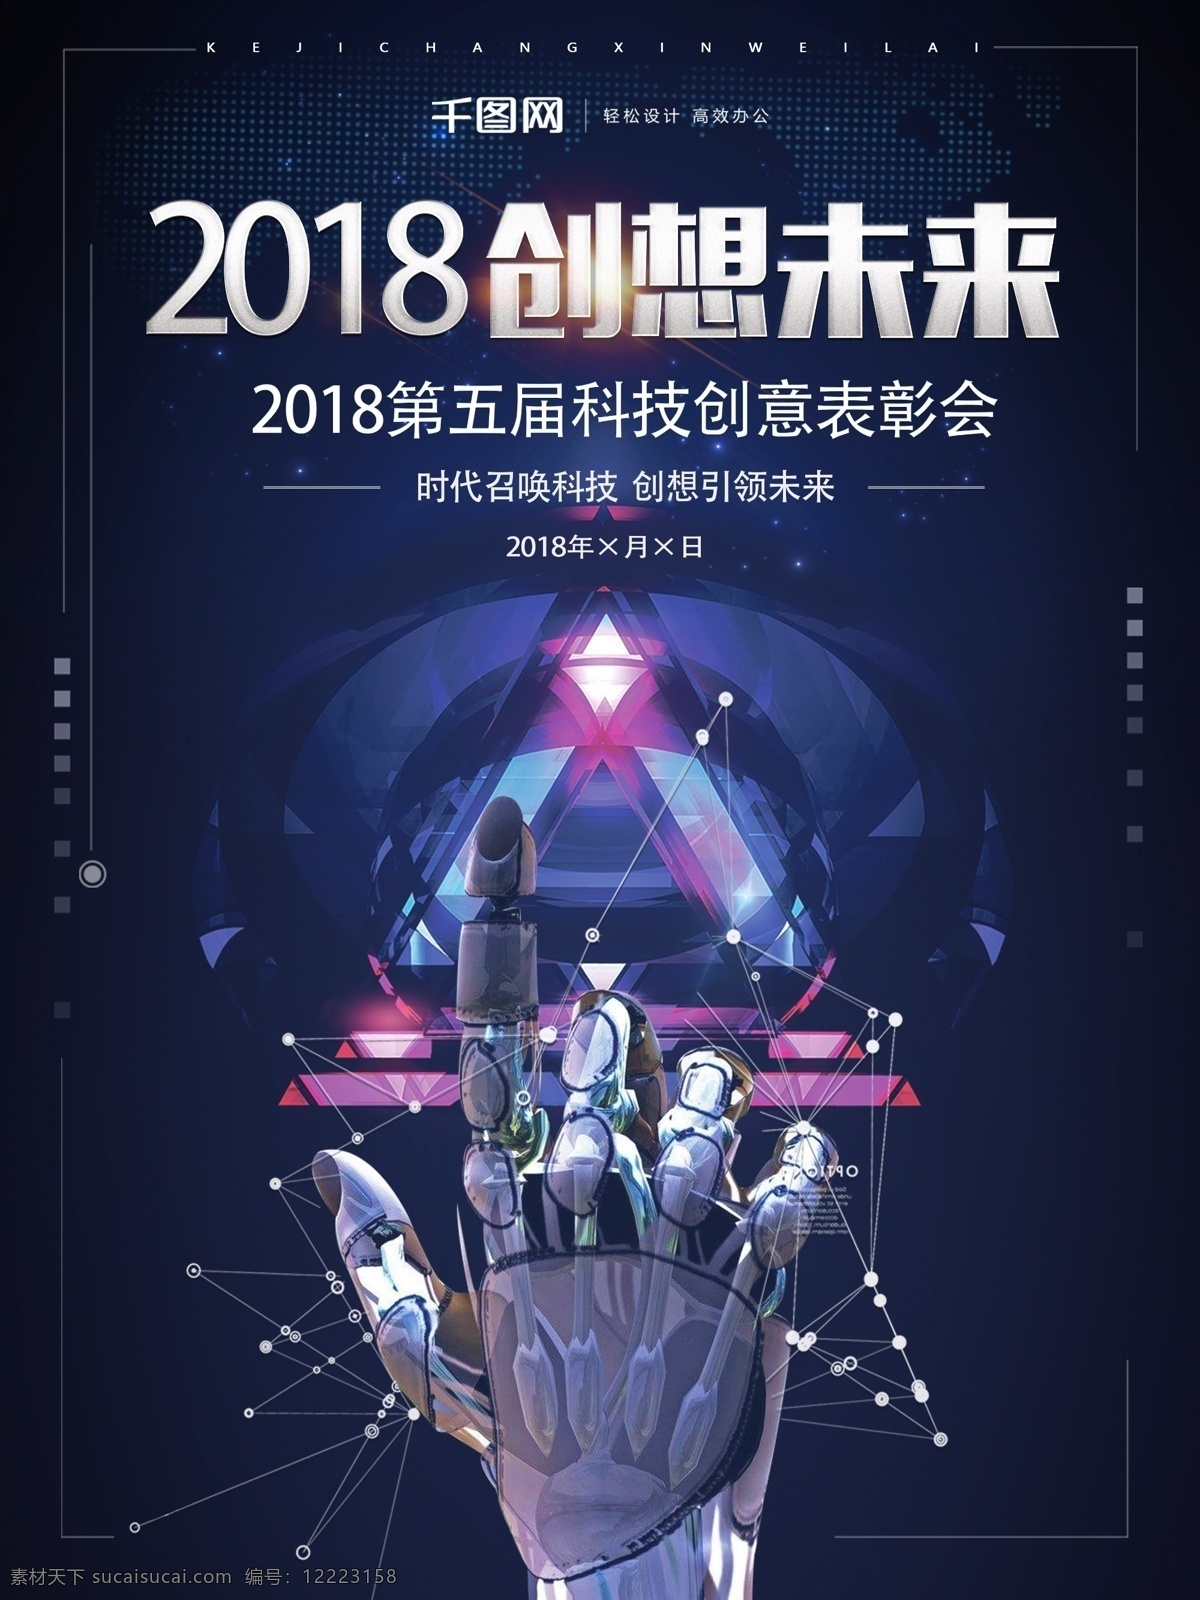 2018 创想 未来 科技 海报 未来科技 创想未来 蓝色智能科技 科技海报 智能科技时代